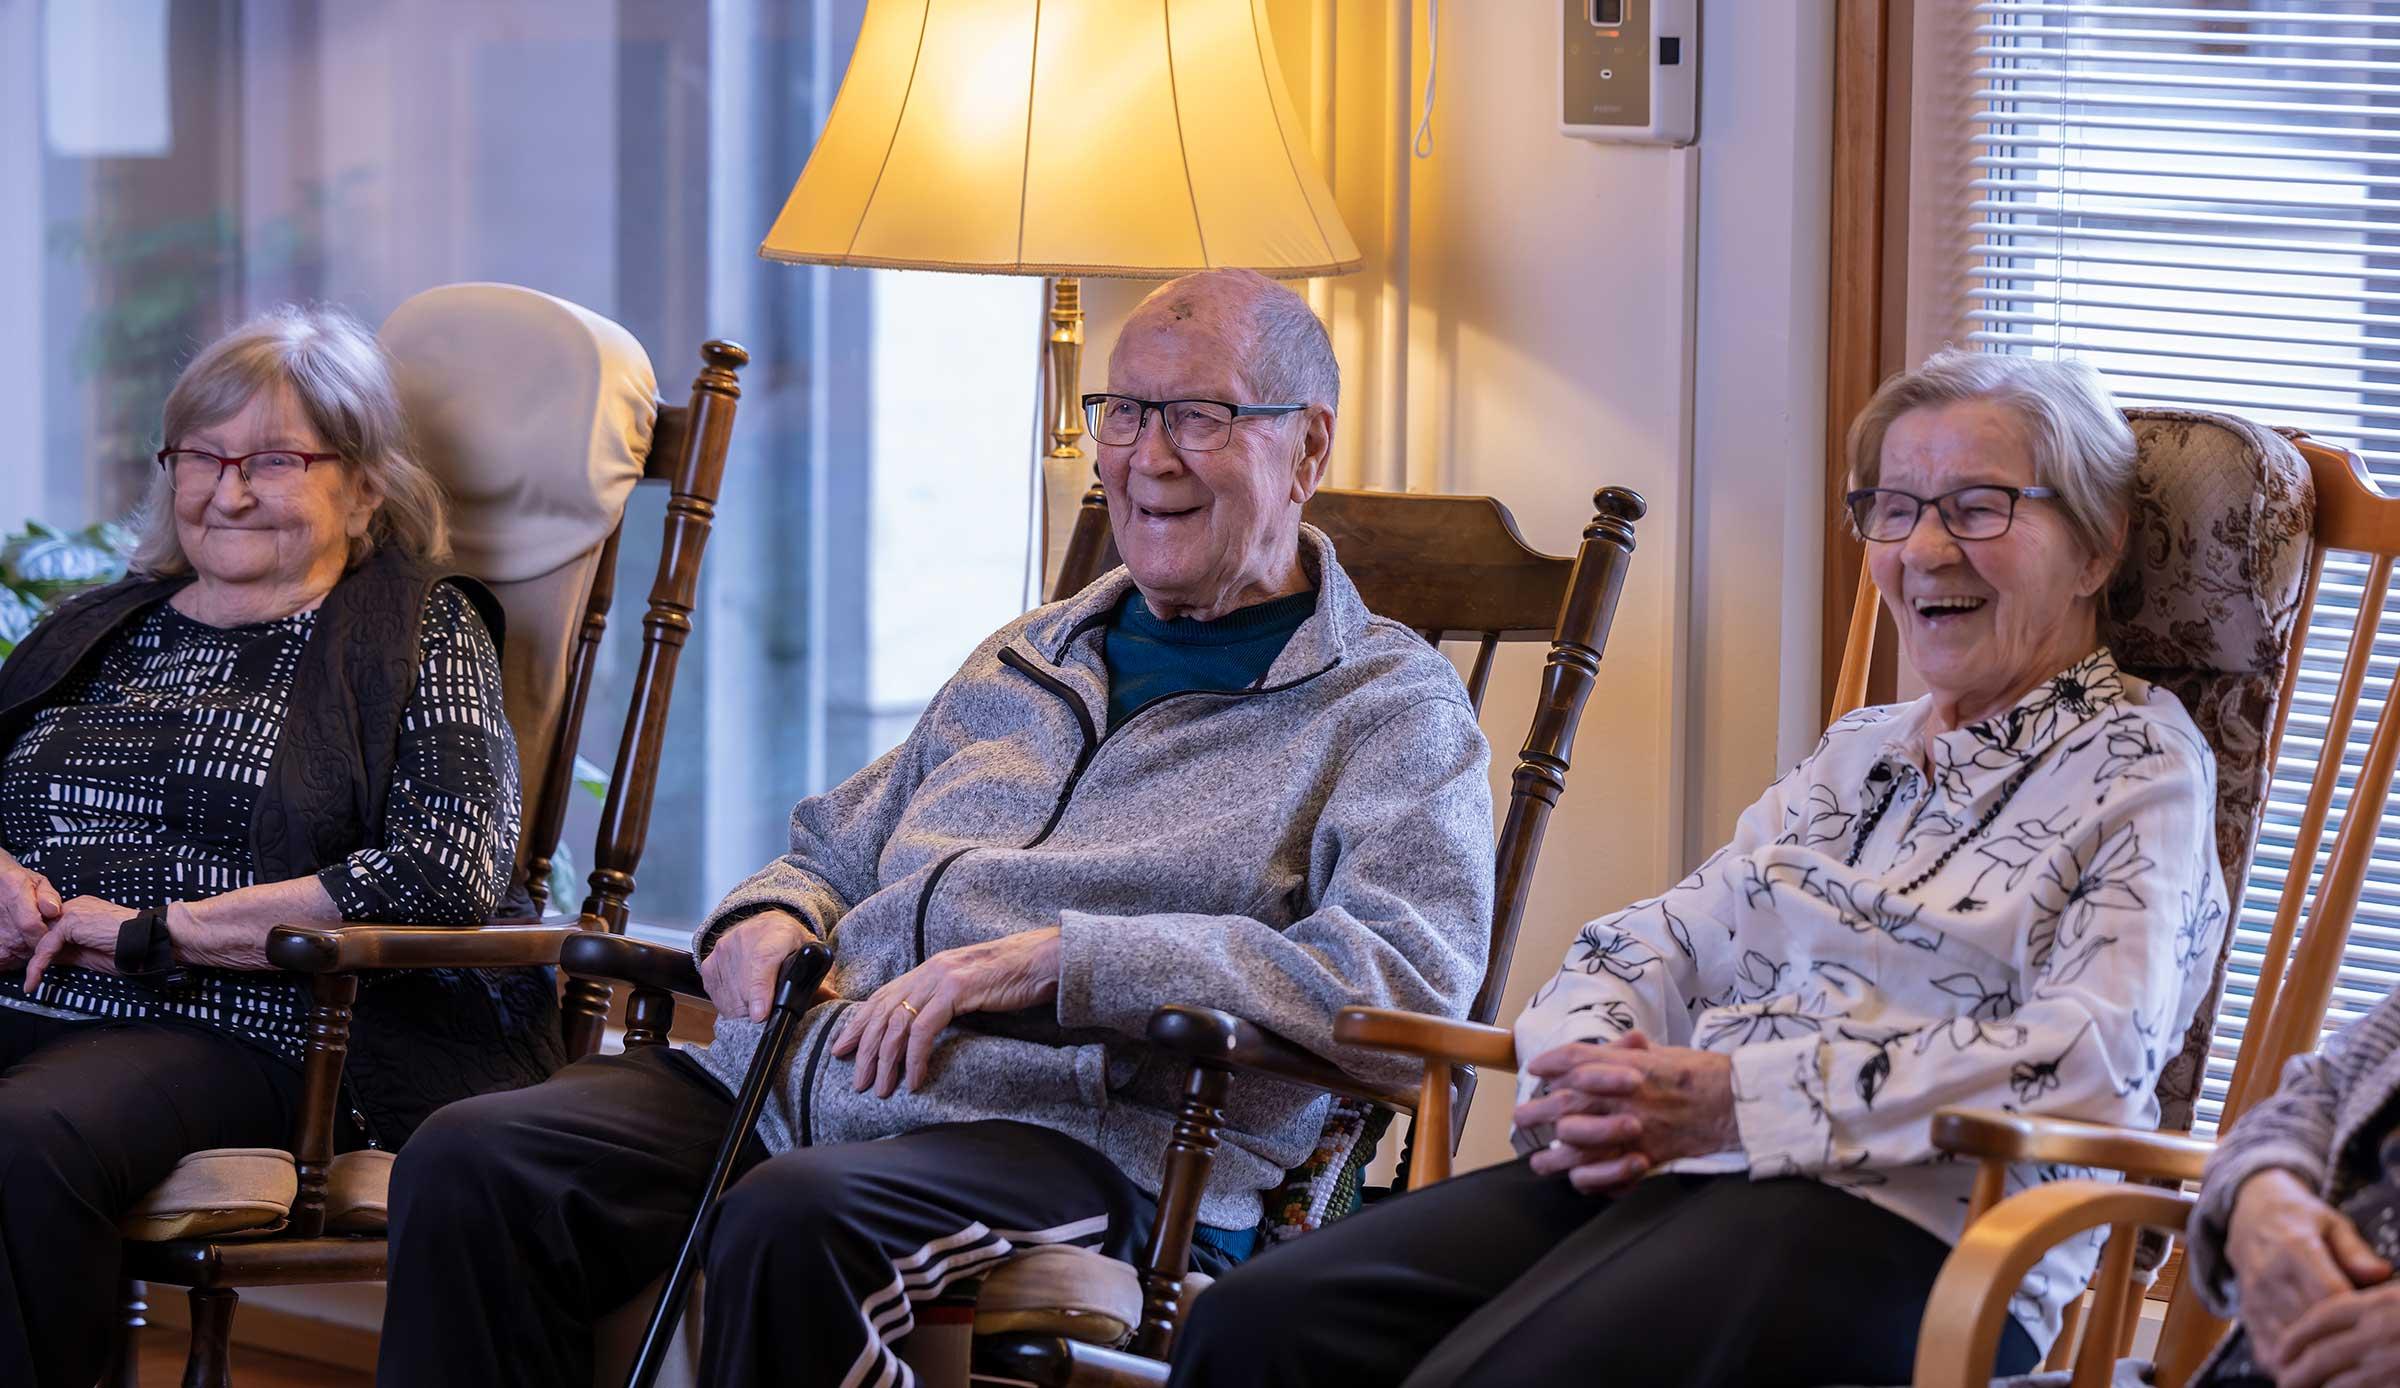 Yrjö ja Hanna -senioriasunnot on tarkoitettu ikääntyville, jotka pärjäävät itsenäisesti tai kevyen avun turvin.